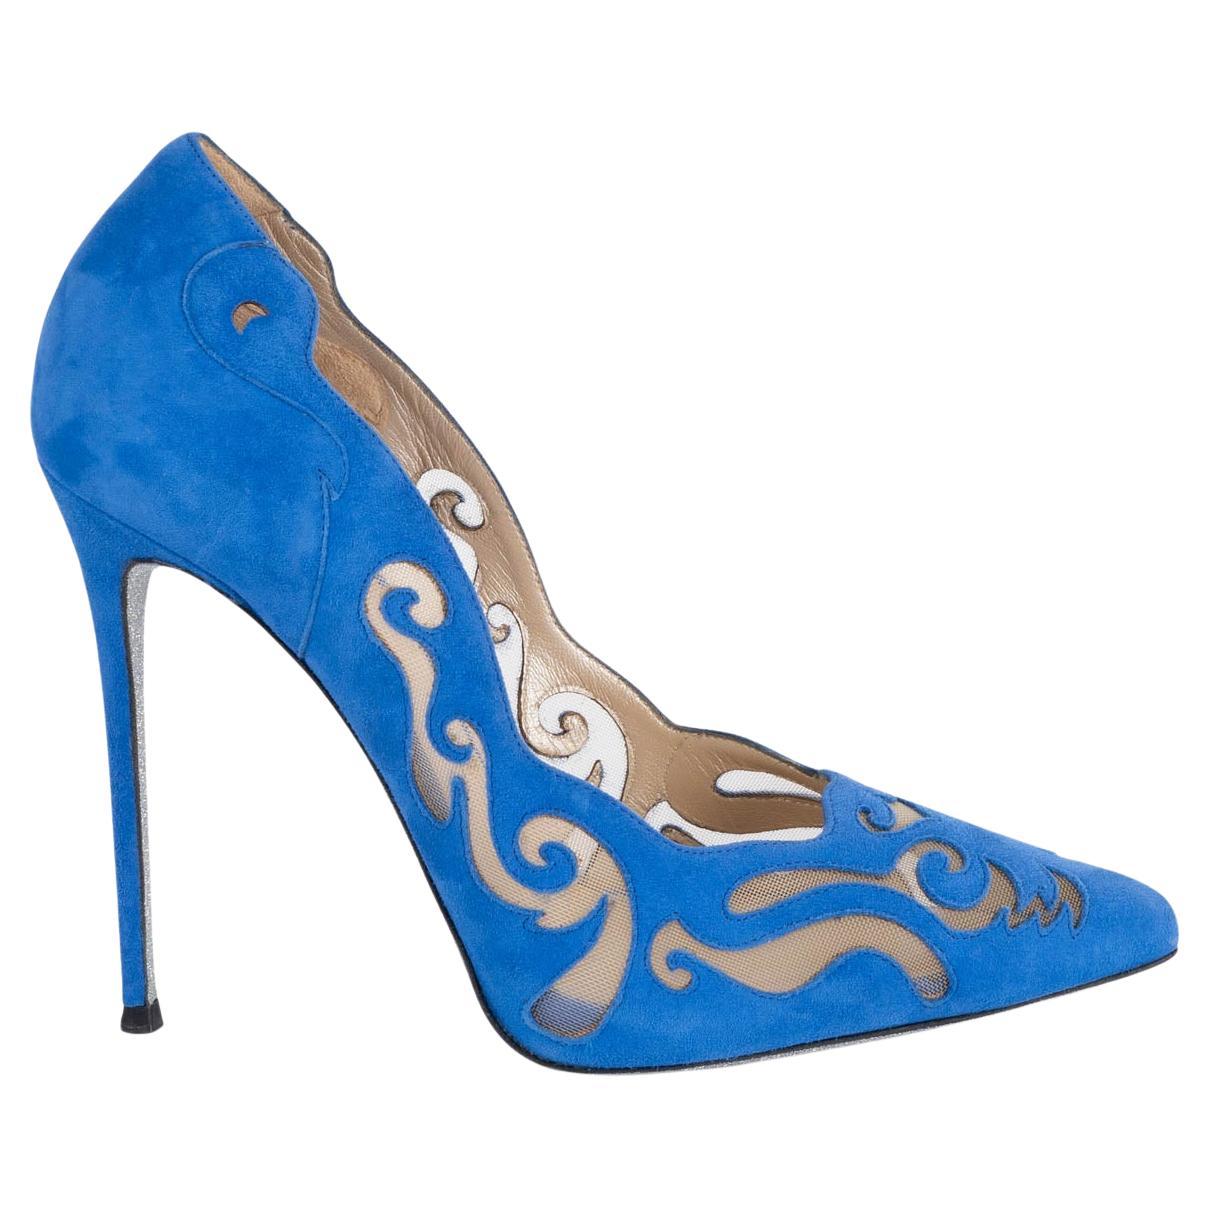 RENE CAOVILLA cobalt blue suede ILLUSION LASER-CUT Pumps Shoes 38.5 For Sale